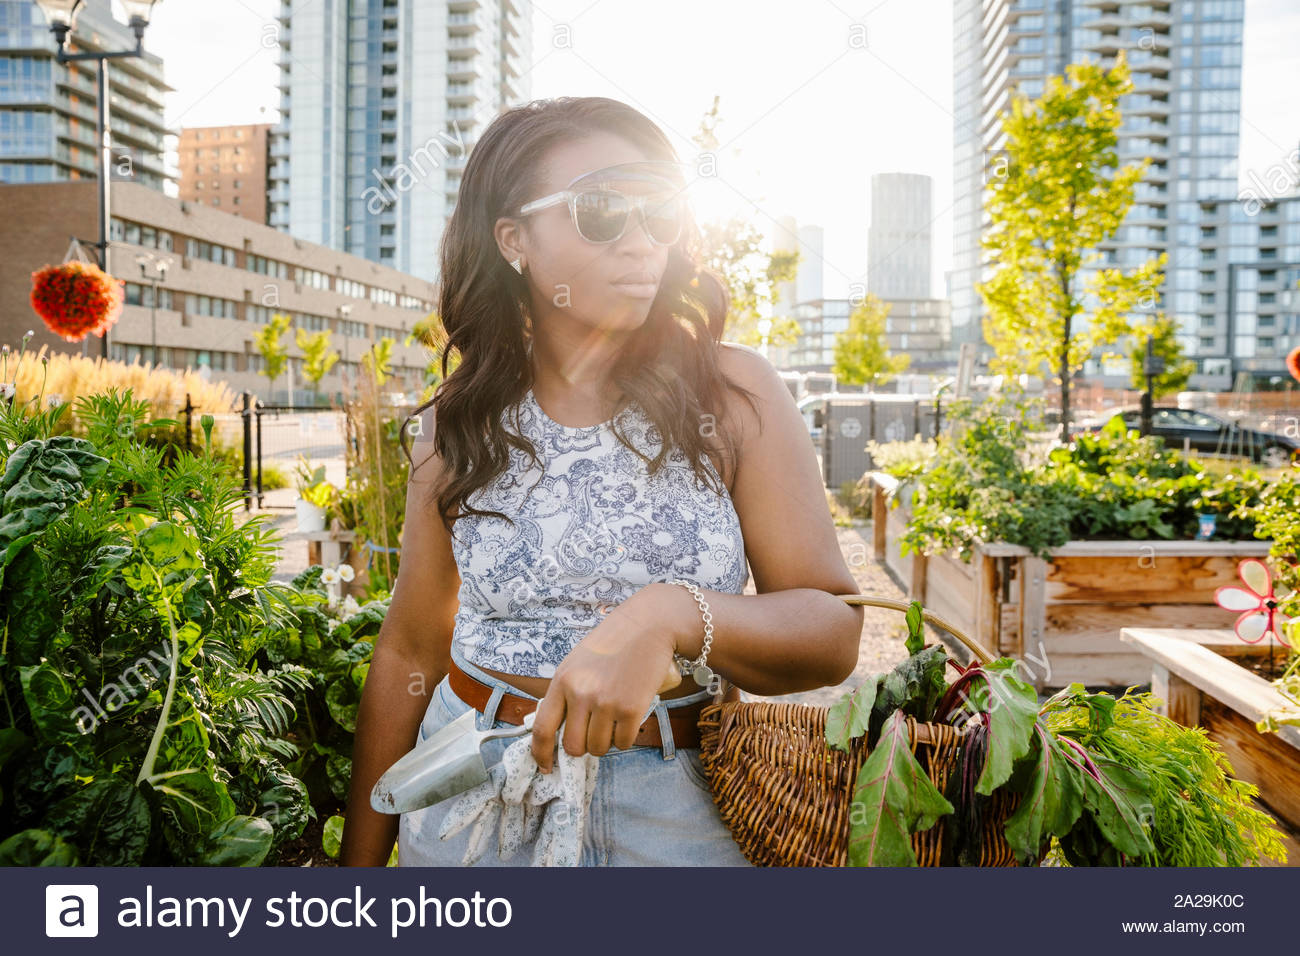 Ritratto fiducioso giovane donna la raccolta di ortaggi freschi nella soleggiata, urban comunità giardino Foto Stock